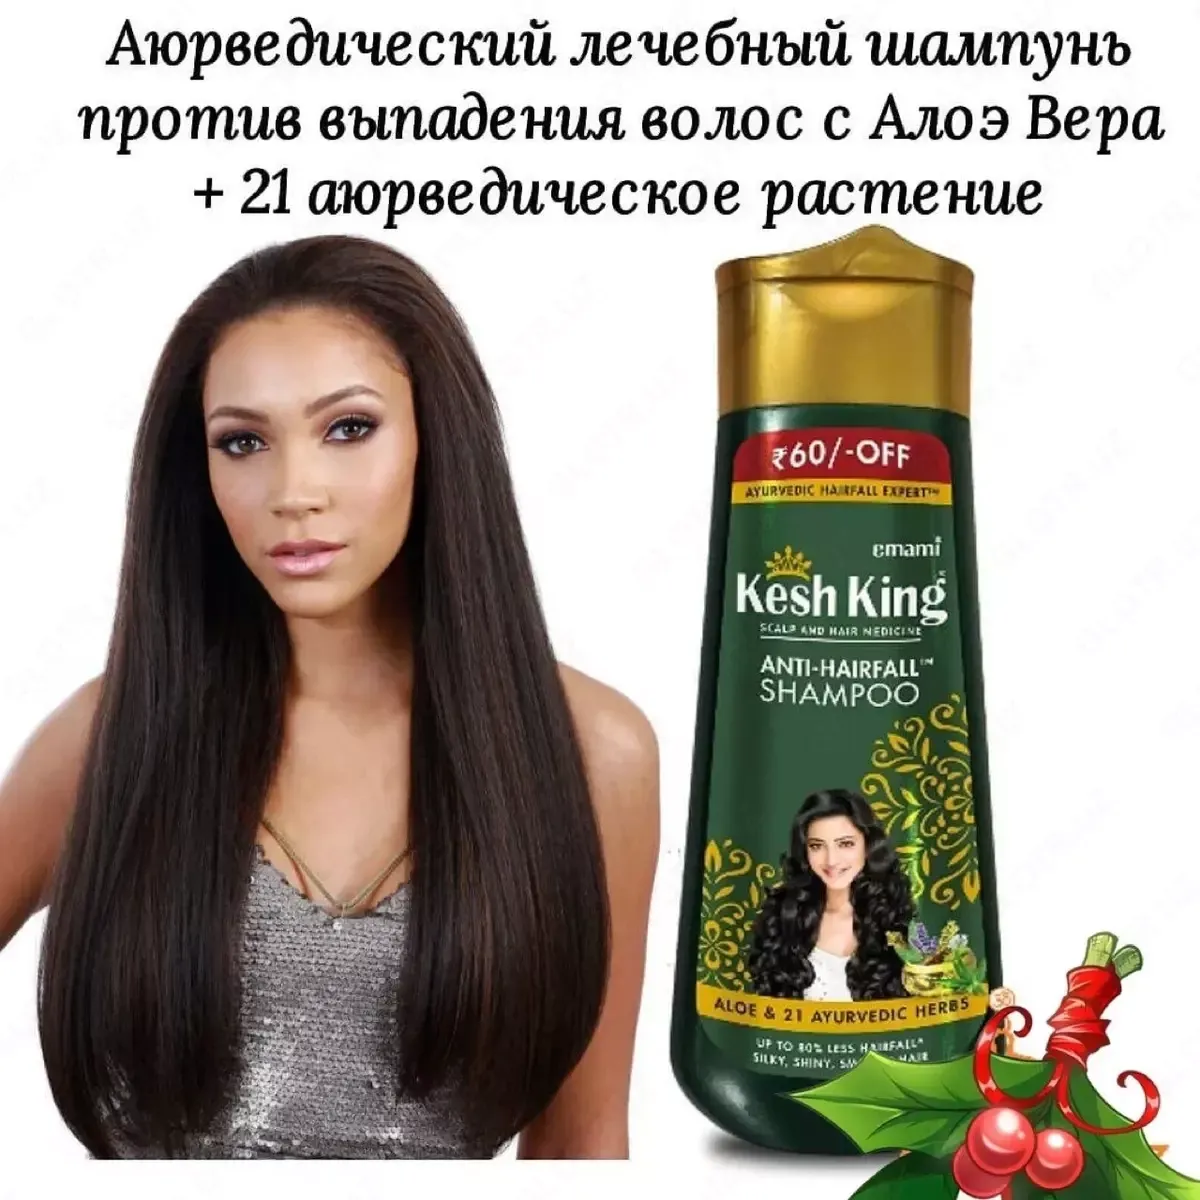 Шампунь - препятствующий выпадению волос, 200мл - Kesh King#2